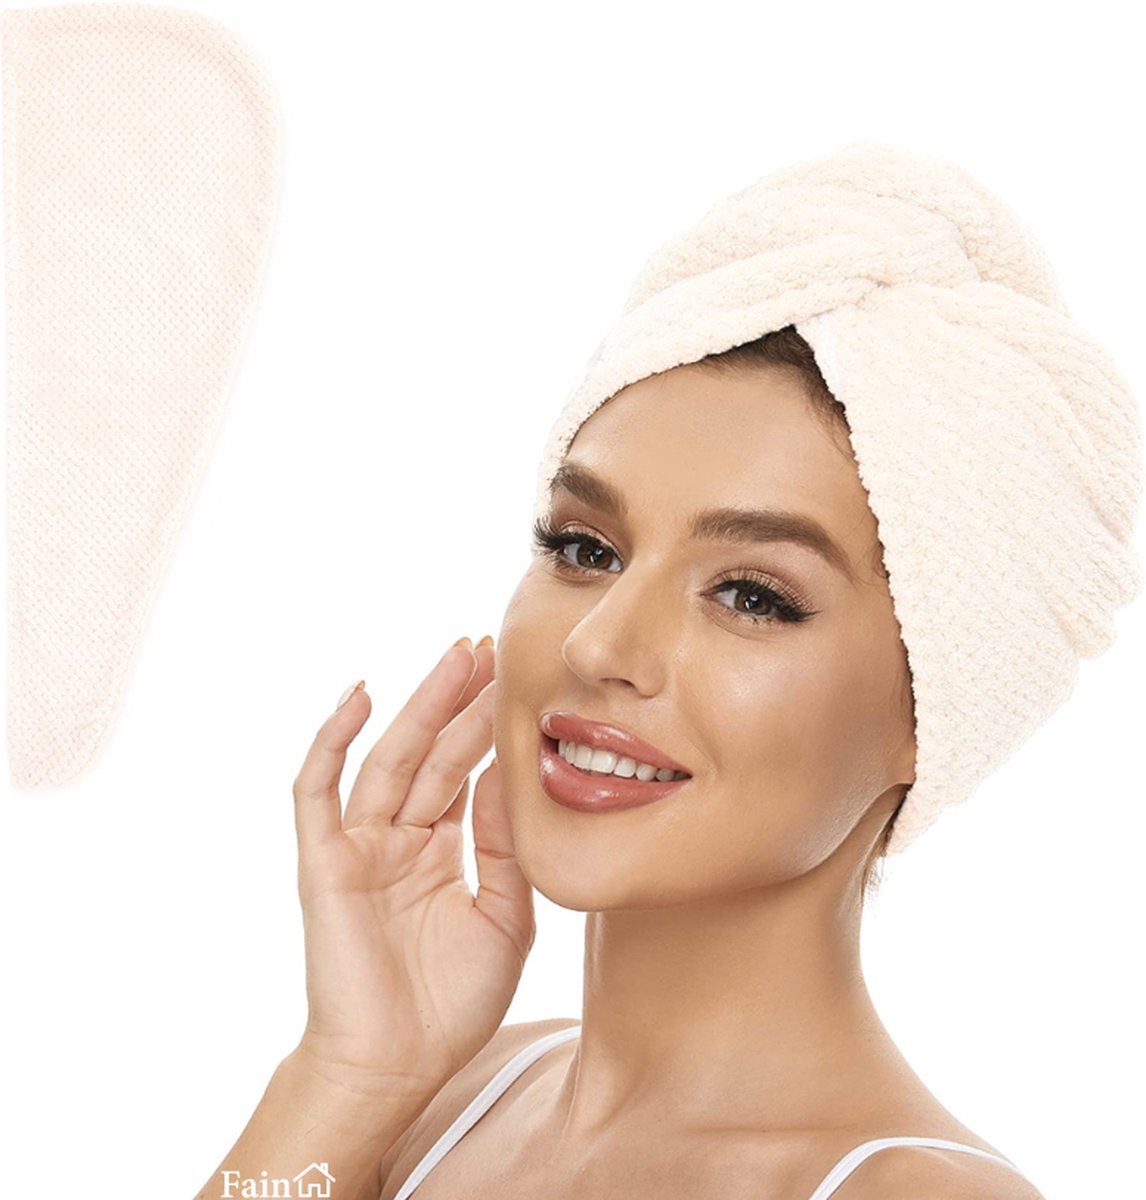 Fain® - Premium haarhanddoek – Hair towel – Wit – Voor alle haartypes - Haarhanddoek microvezel - Hoofdhanddoek – Haartulband – Haarhanddoek badstof – Haarhanddoek kinderen – Haarhanddoek sneldrogend